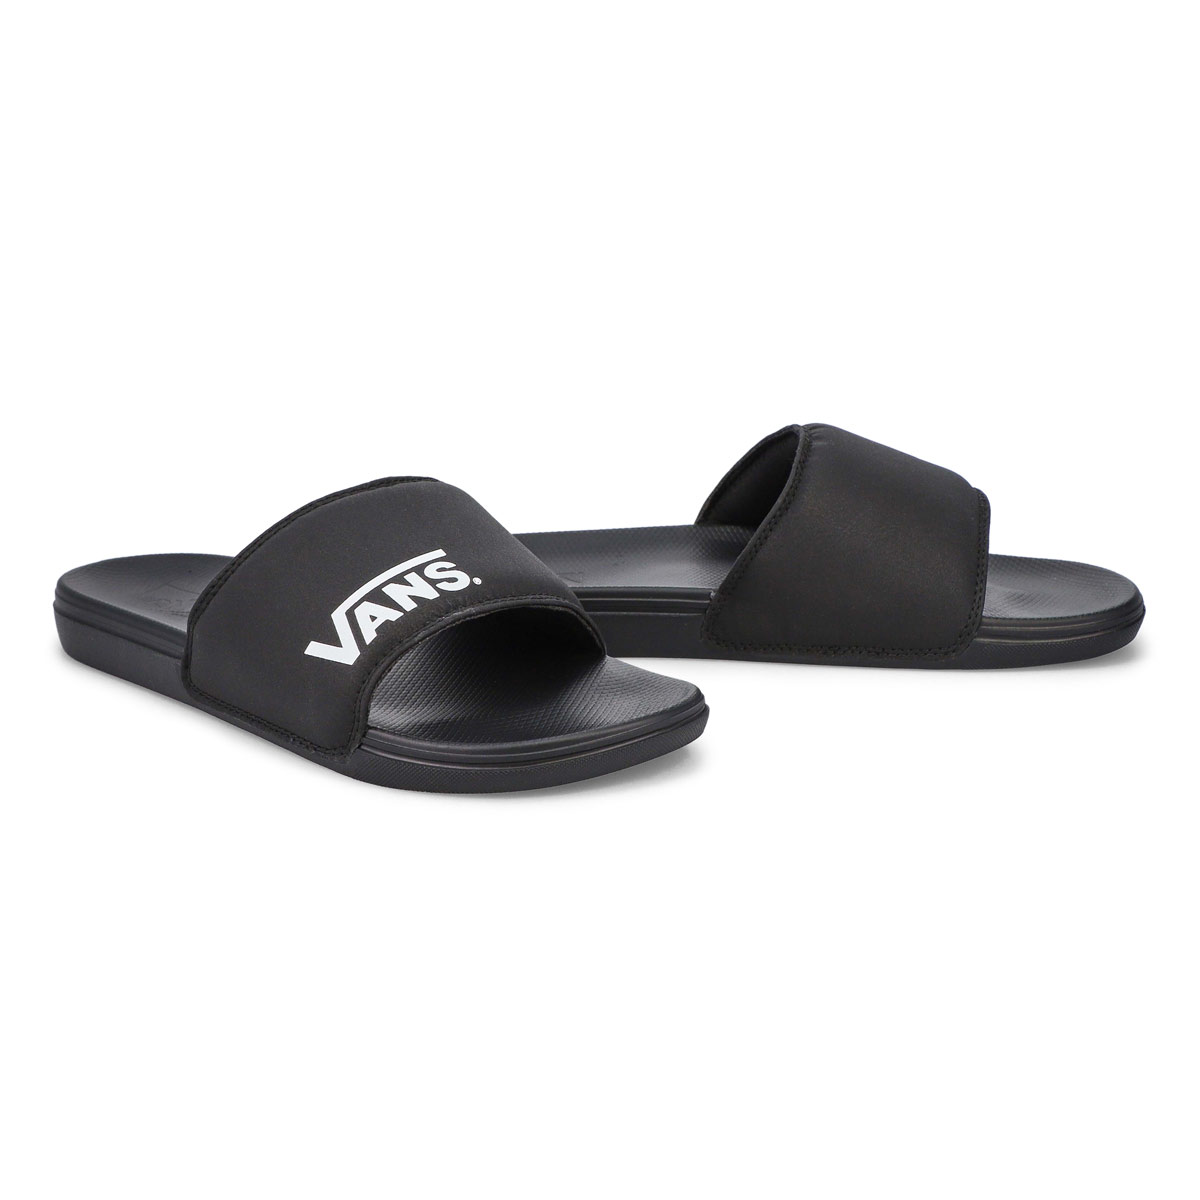 Men's Range Slide-On Sandal- Black/Black